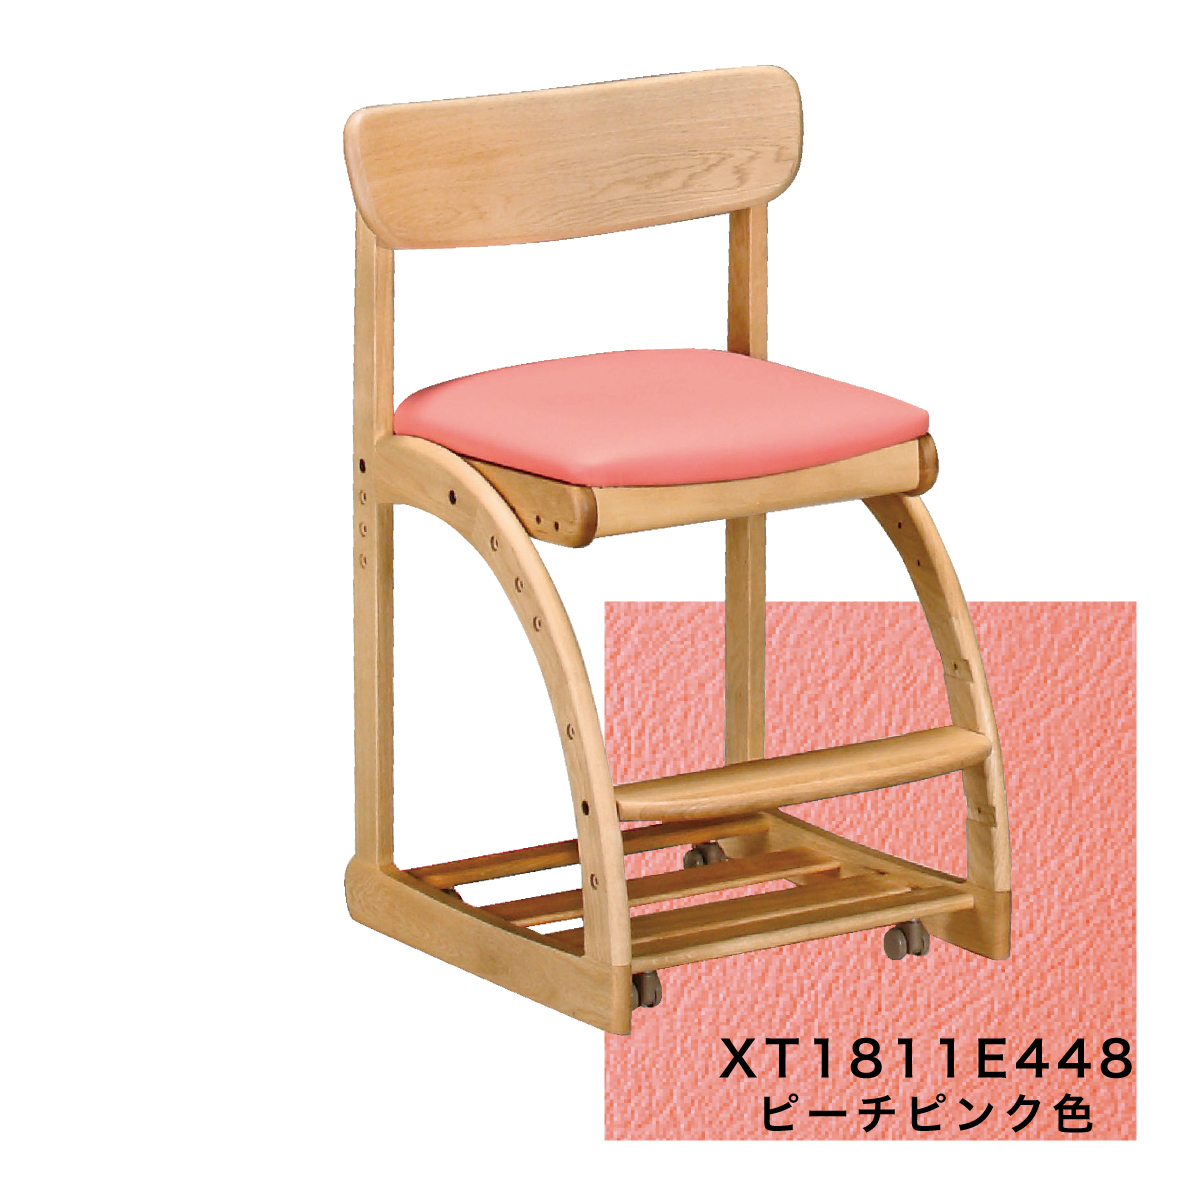 カリモク 学習椅子 木製 XT1811 ピュアオーク色 デスクチェア 学習机 椅子 子供 高さ調整 正しい 姿勢 書斎 キャスター 付 安心の国内生産  karimoku 高級